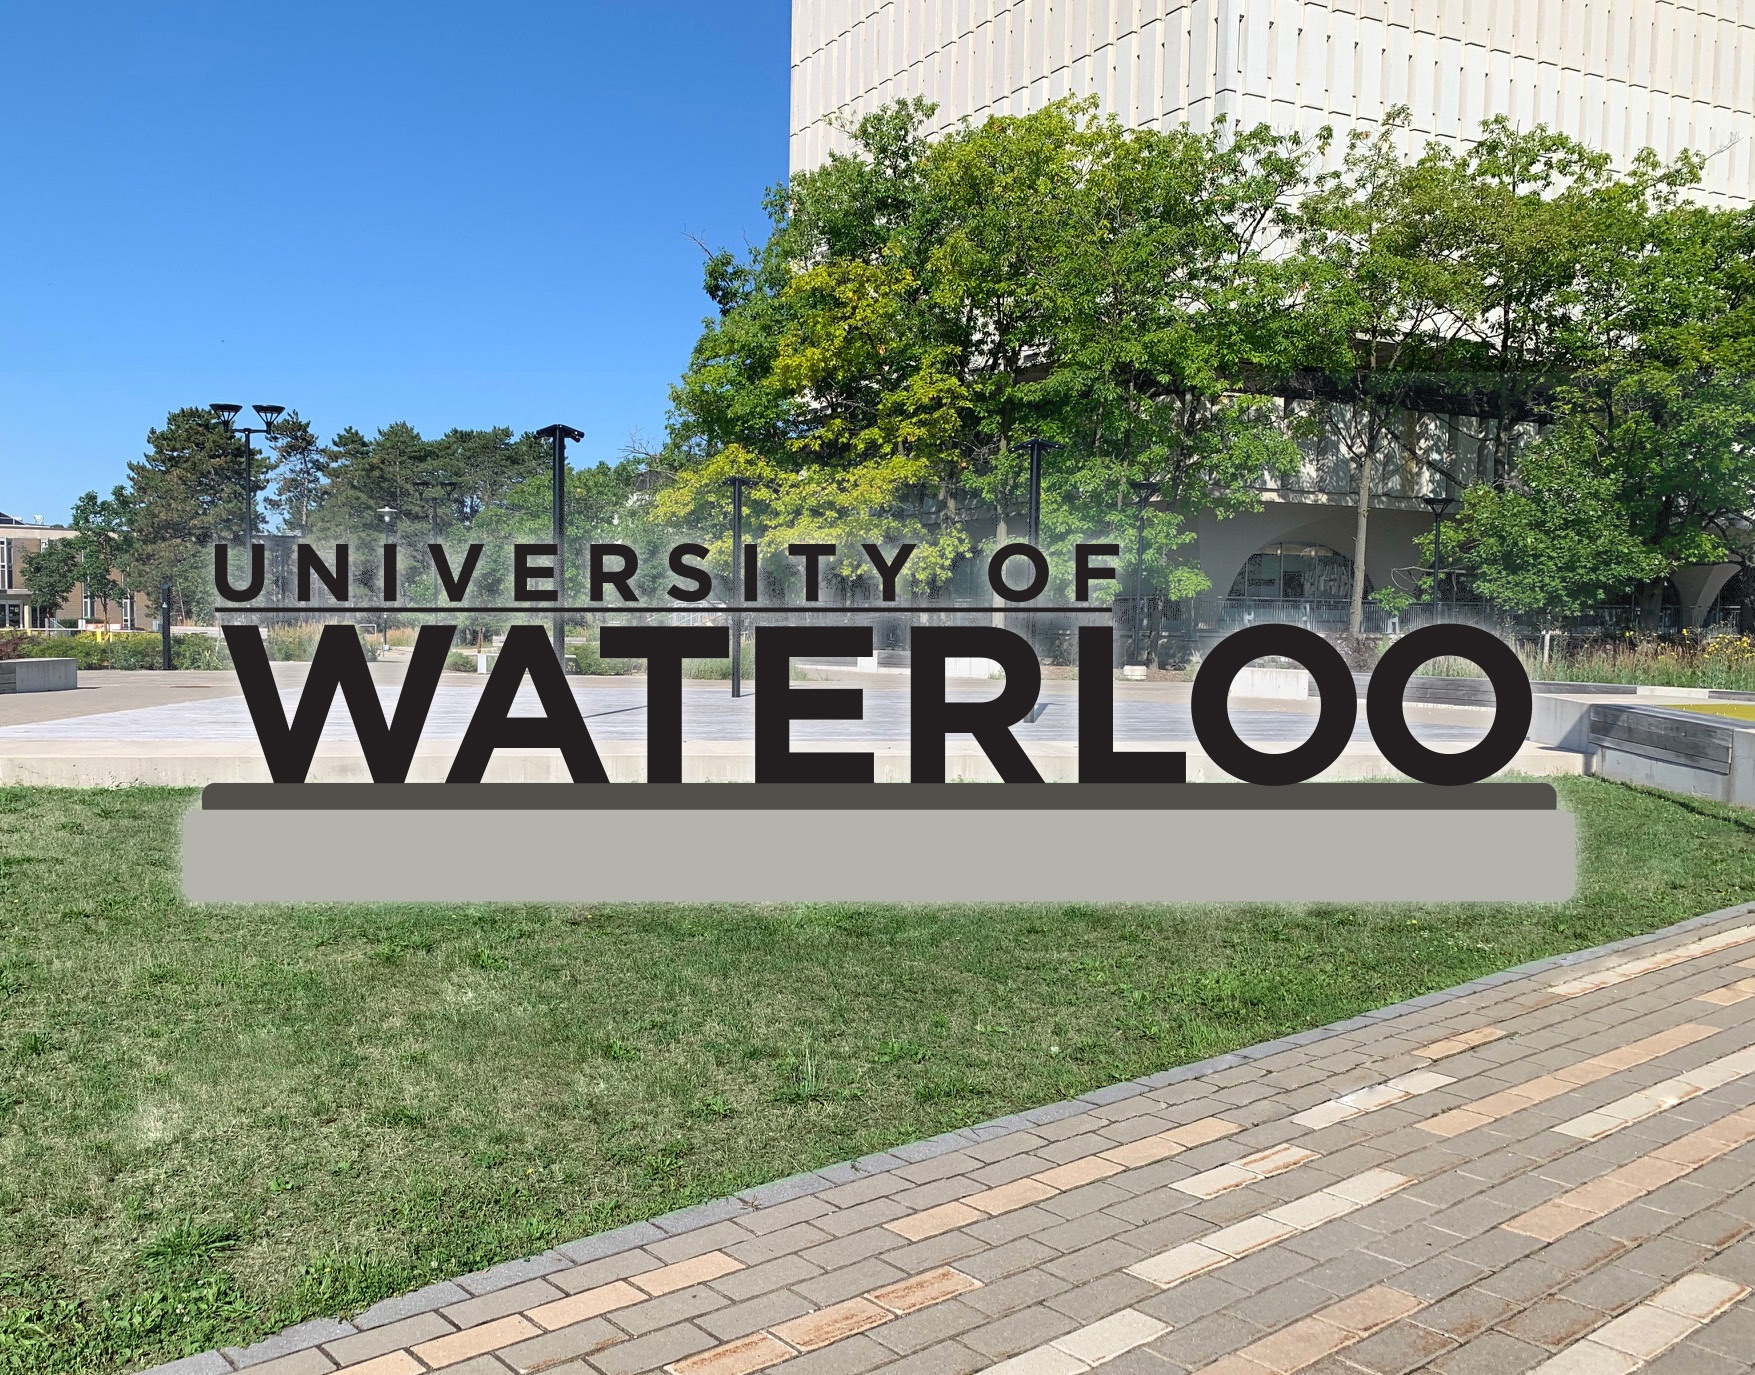 [University of Waterloo]